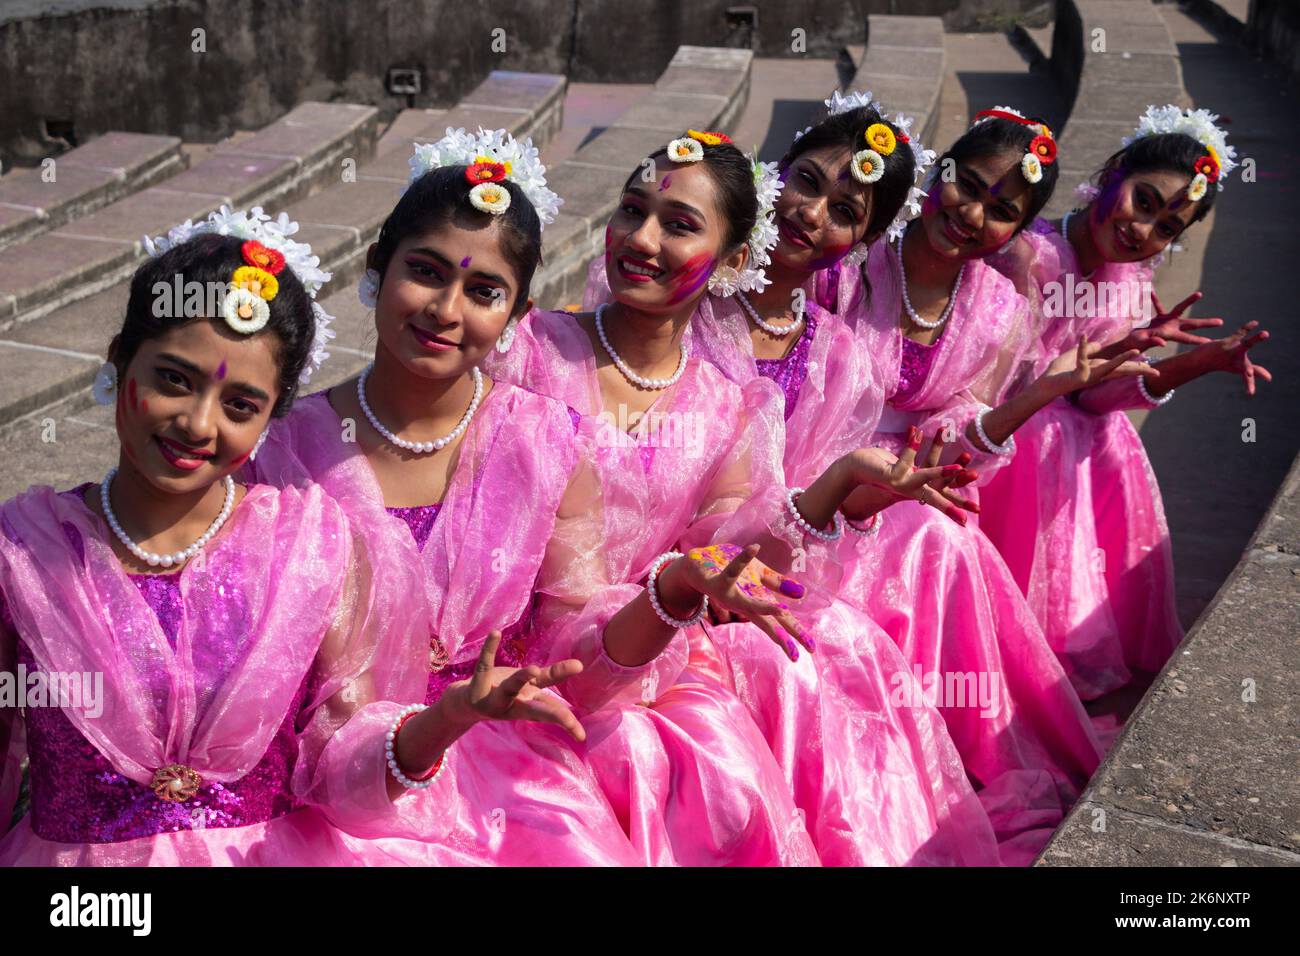 Les femmes portent des robes traditionnelles avec des ornements floraux et se présentent au Festival de printemps, le premier jour du printemps du mois bengali ''Falgun''. Banque D'Images